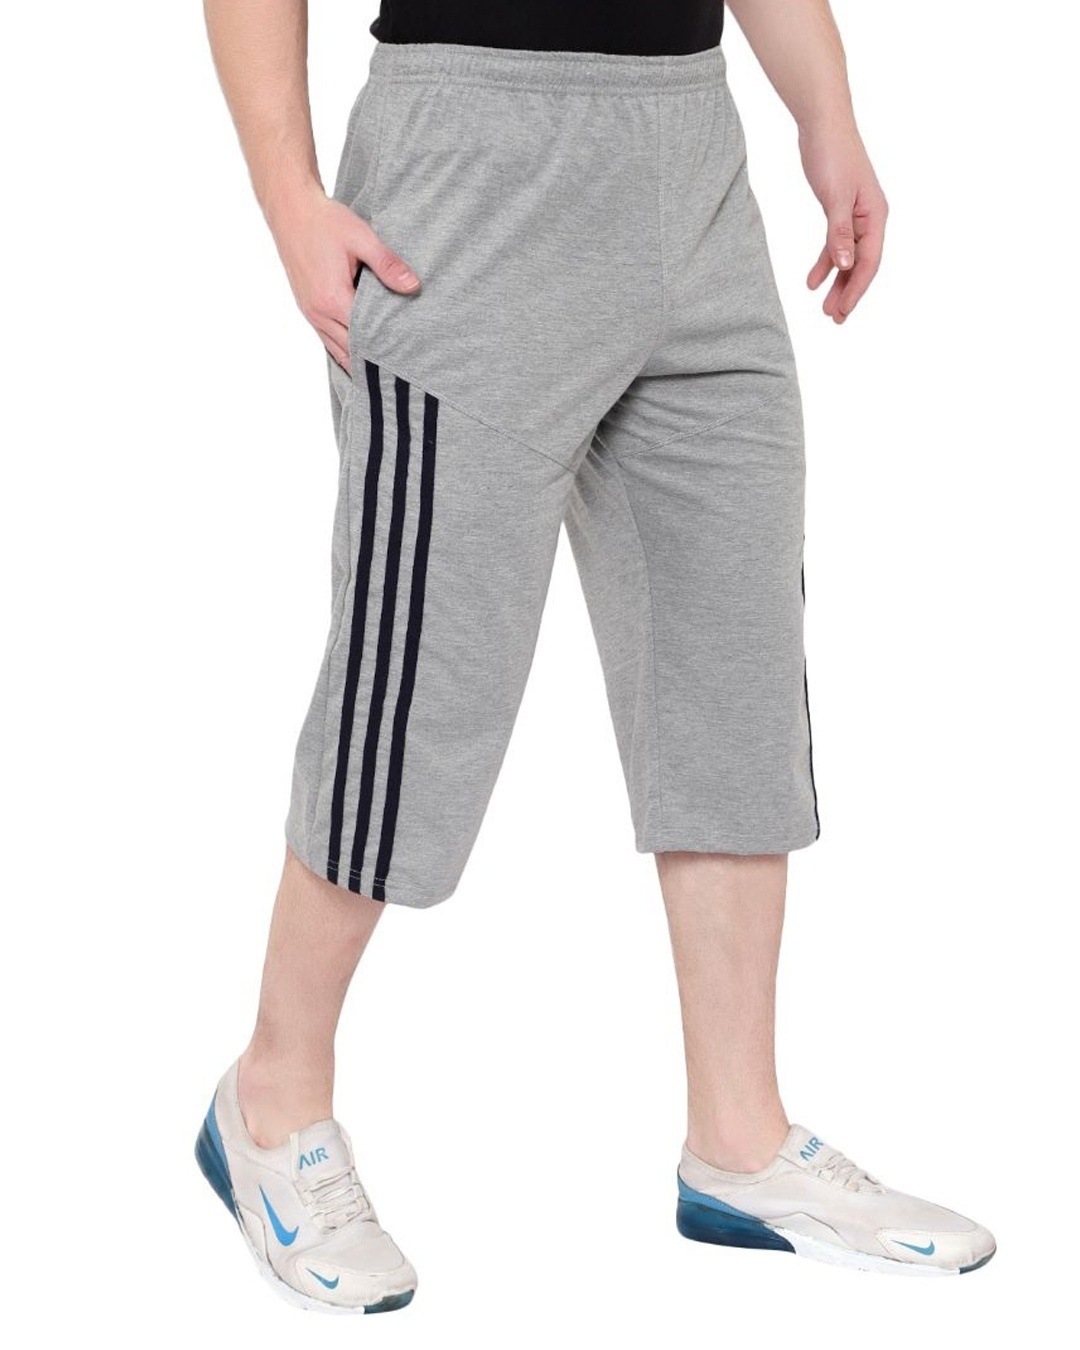 Buy Men's Grey Cotton 3/4 th Shorts for Men Grey Online at Bewakoof